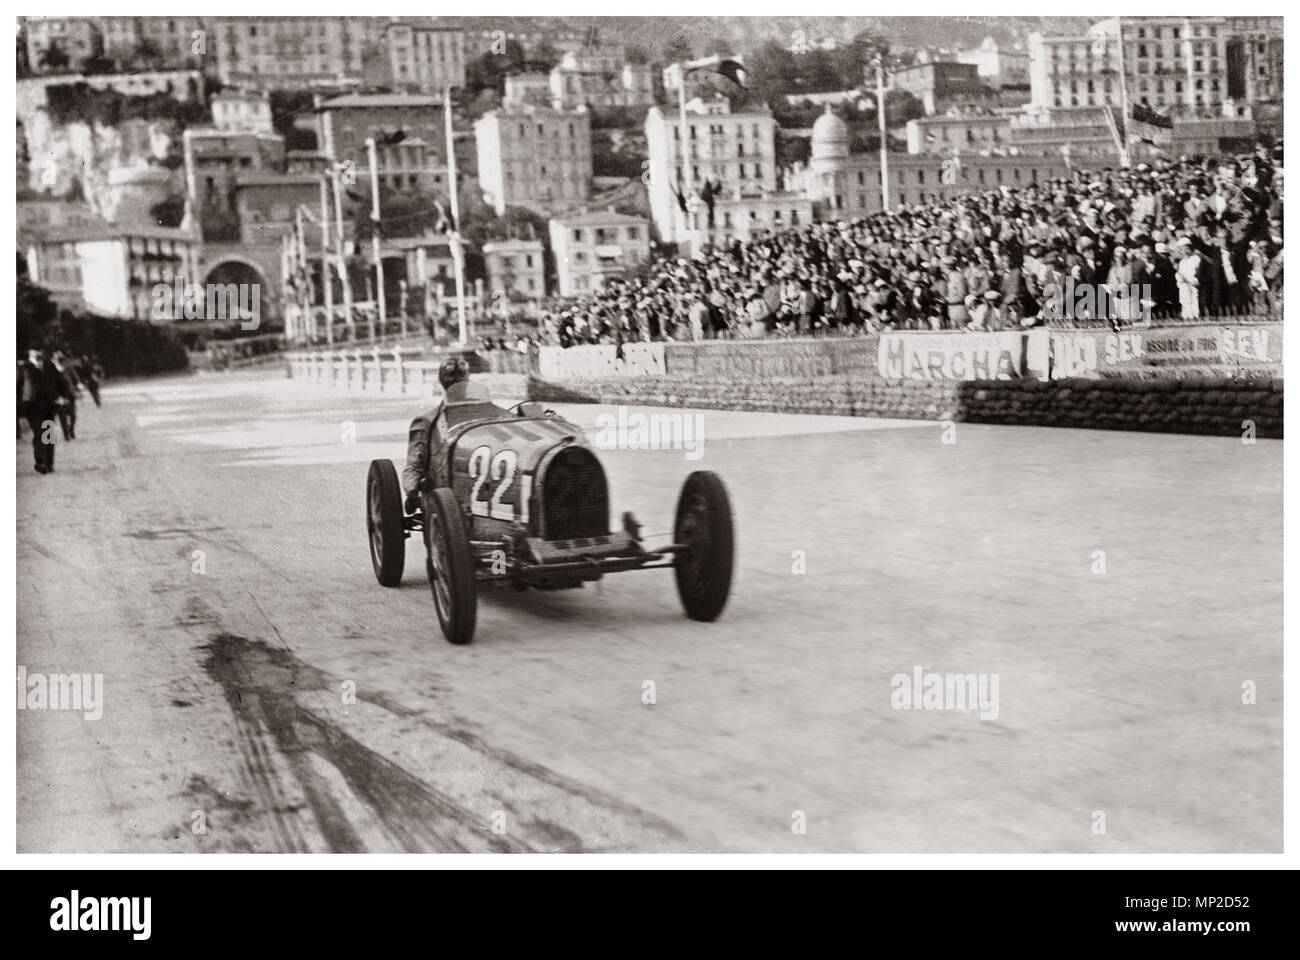 MONACO 1931 vincitore n. 22 Storica 1930 Grand Prix di Monaco vincere da Louis Chiron in una Bugatti T51 al 1931 Grand Prix di Monaco Monaco Francia Foto Stock